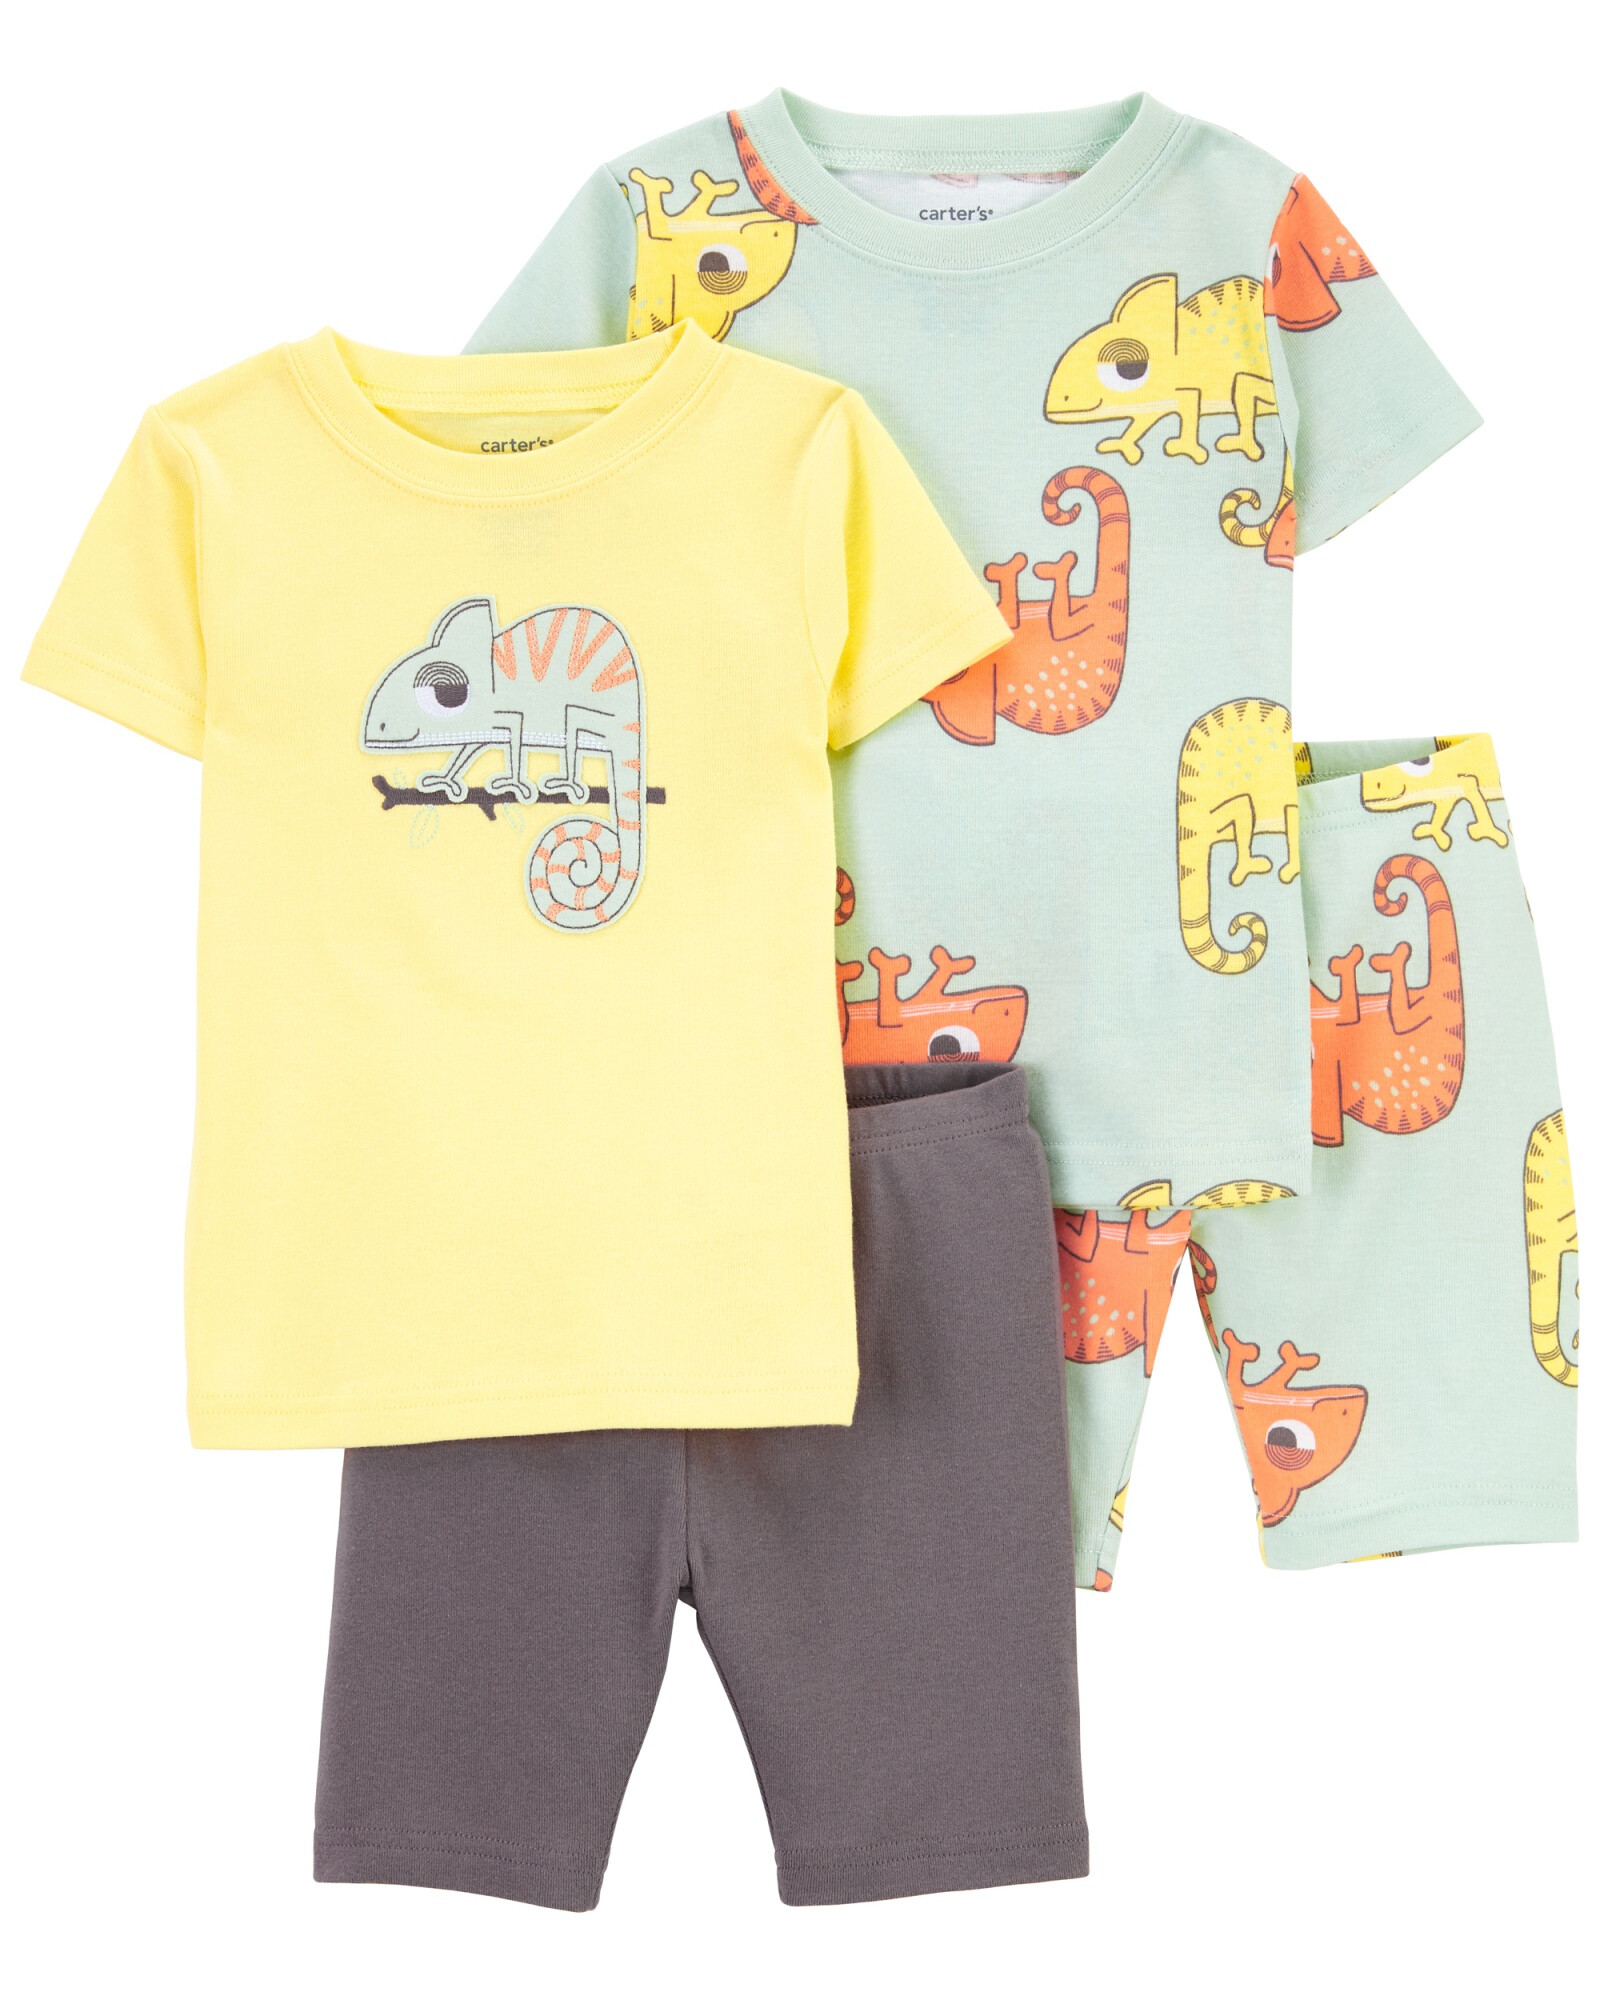 Pijama cuatro piezas de algodón dos remeras y dos bermudas Sin color